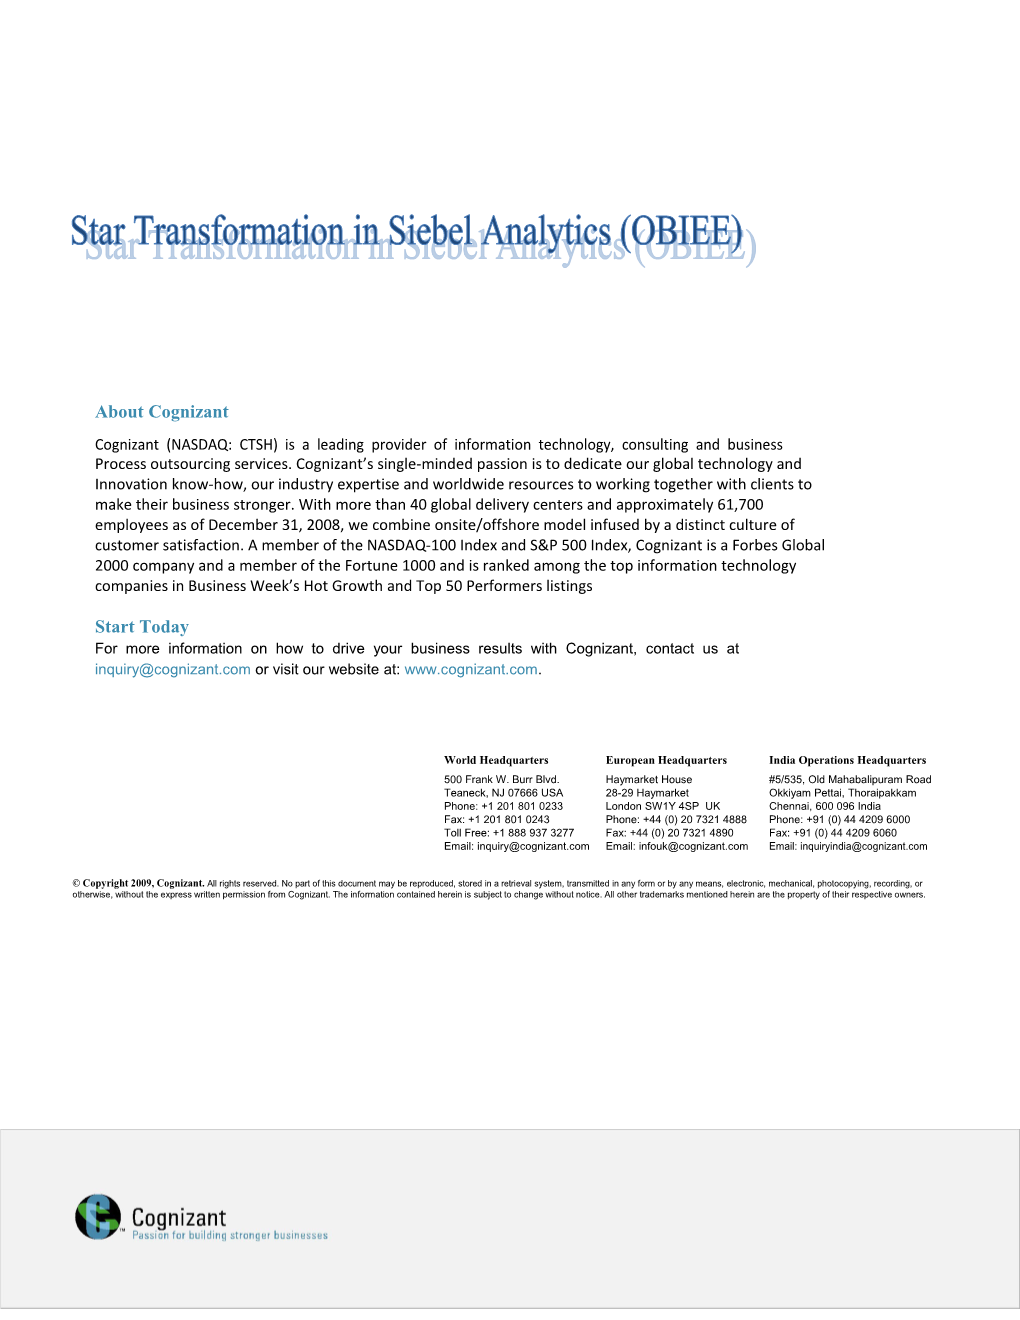 Star Transformation in Siebel Analytics(OBIEE)